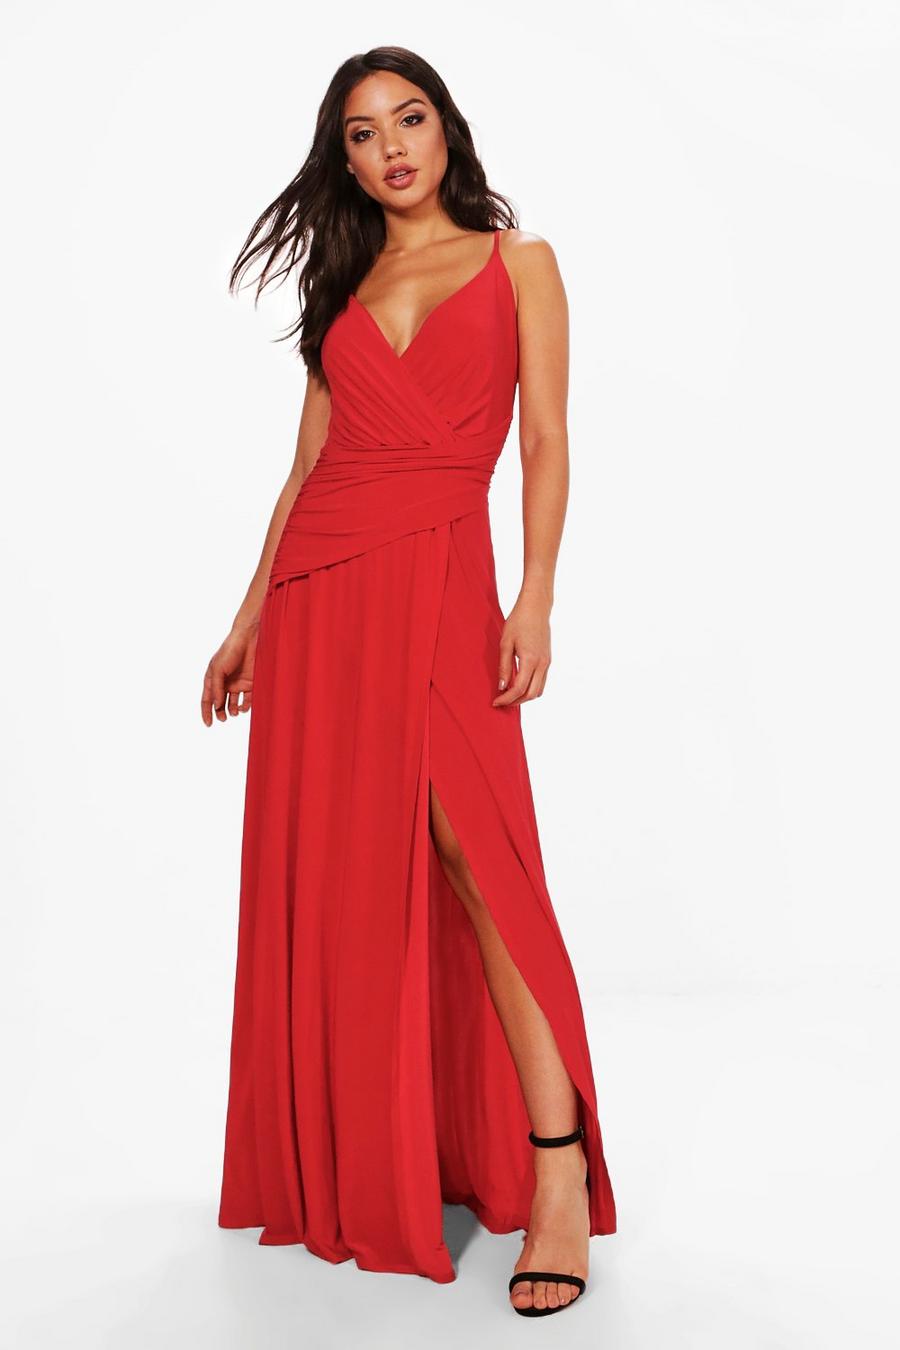 Red שמלת מקסי מעטפת צמודה עם כפלים וכתפיות לשושבינה